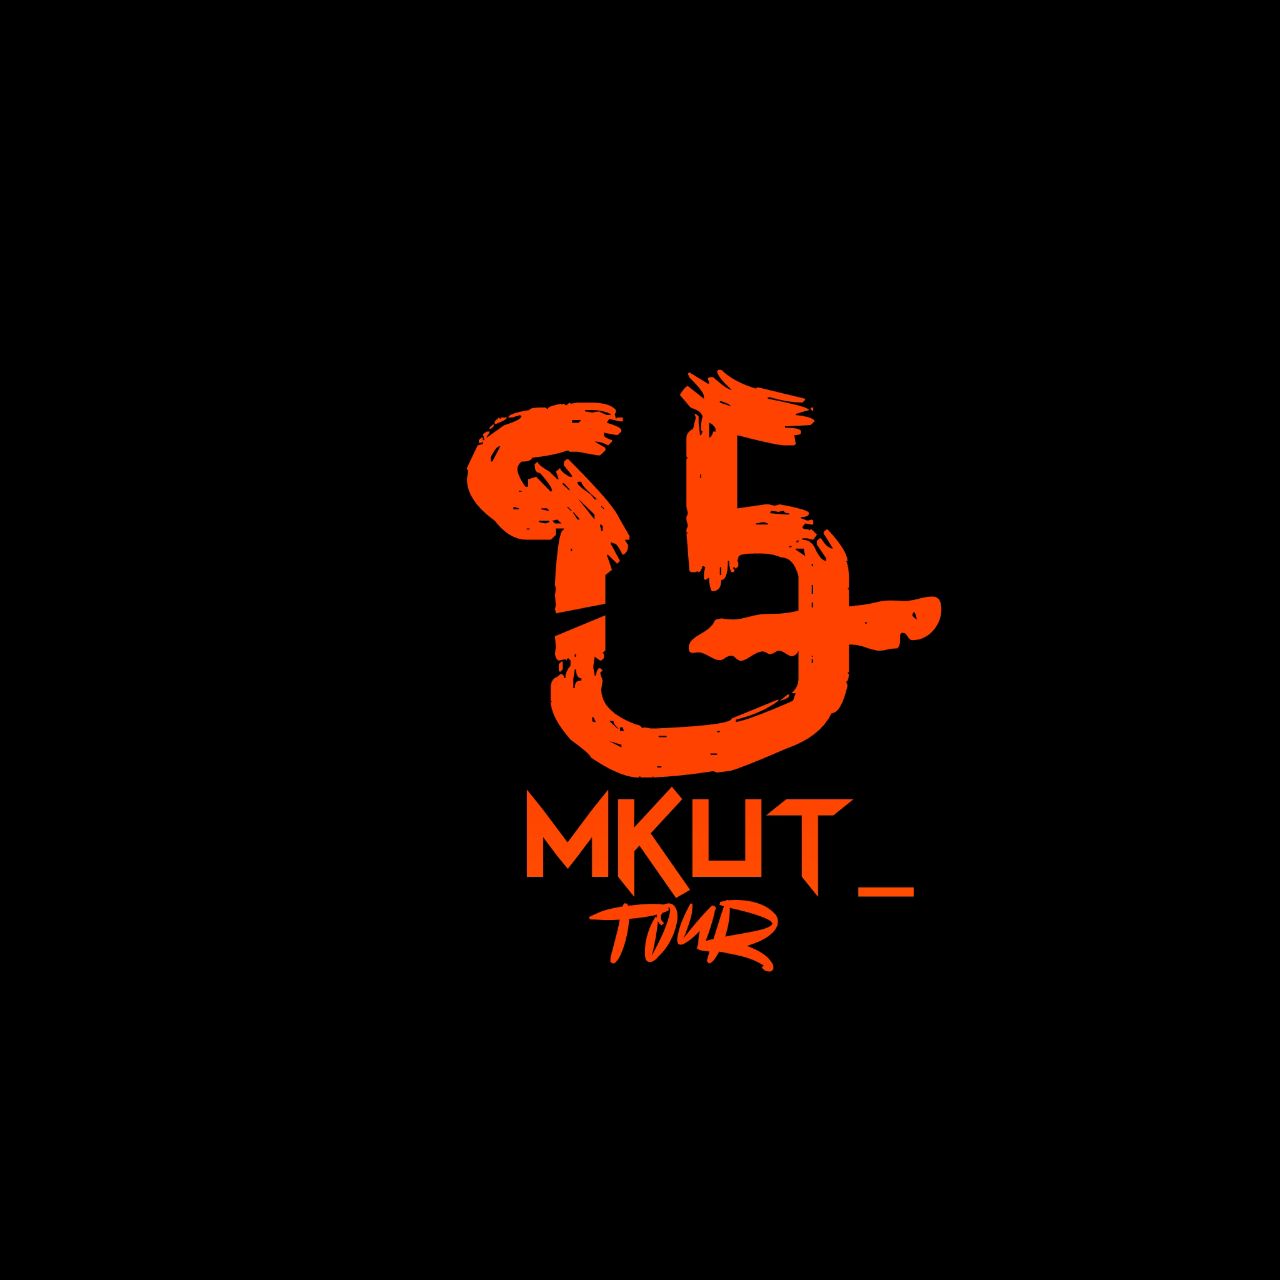 Mkut tour